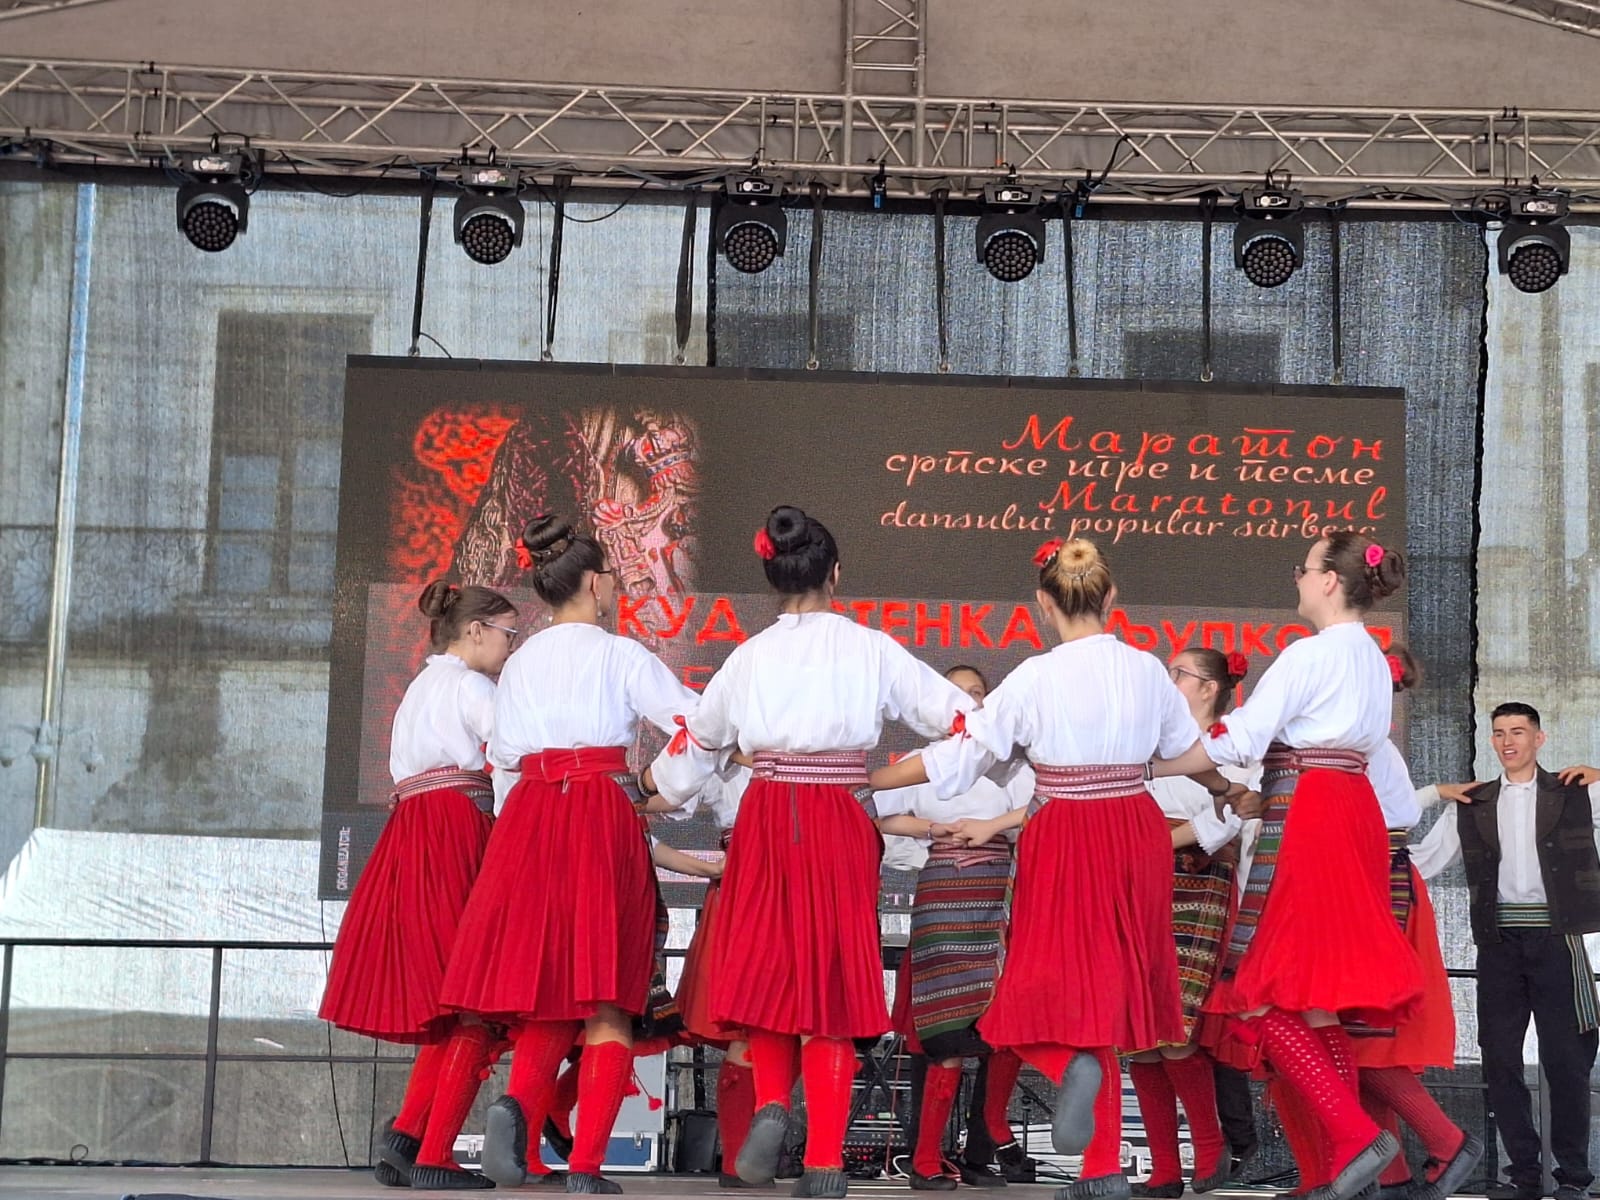 Festivalul Maratonul dansului popular sârbesc (7)